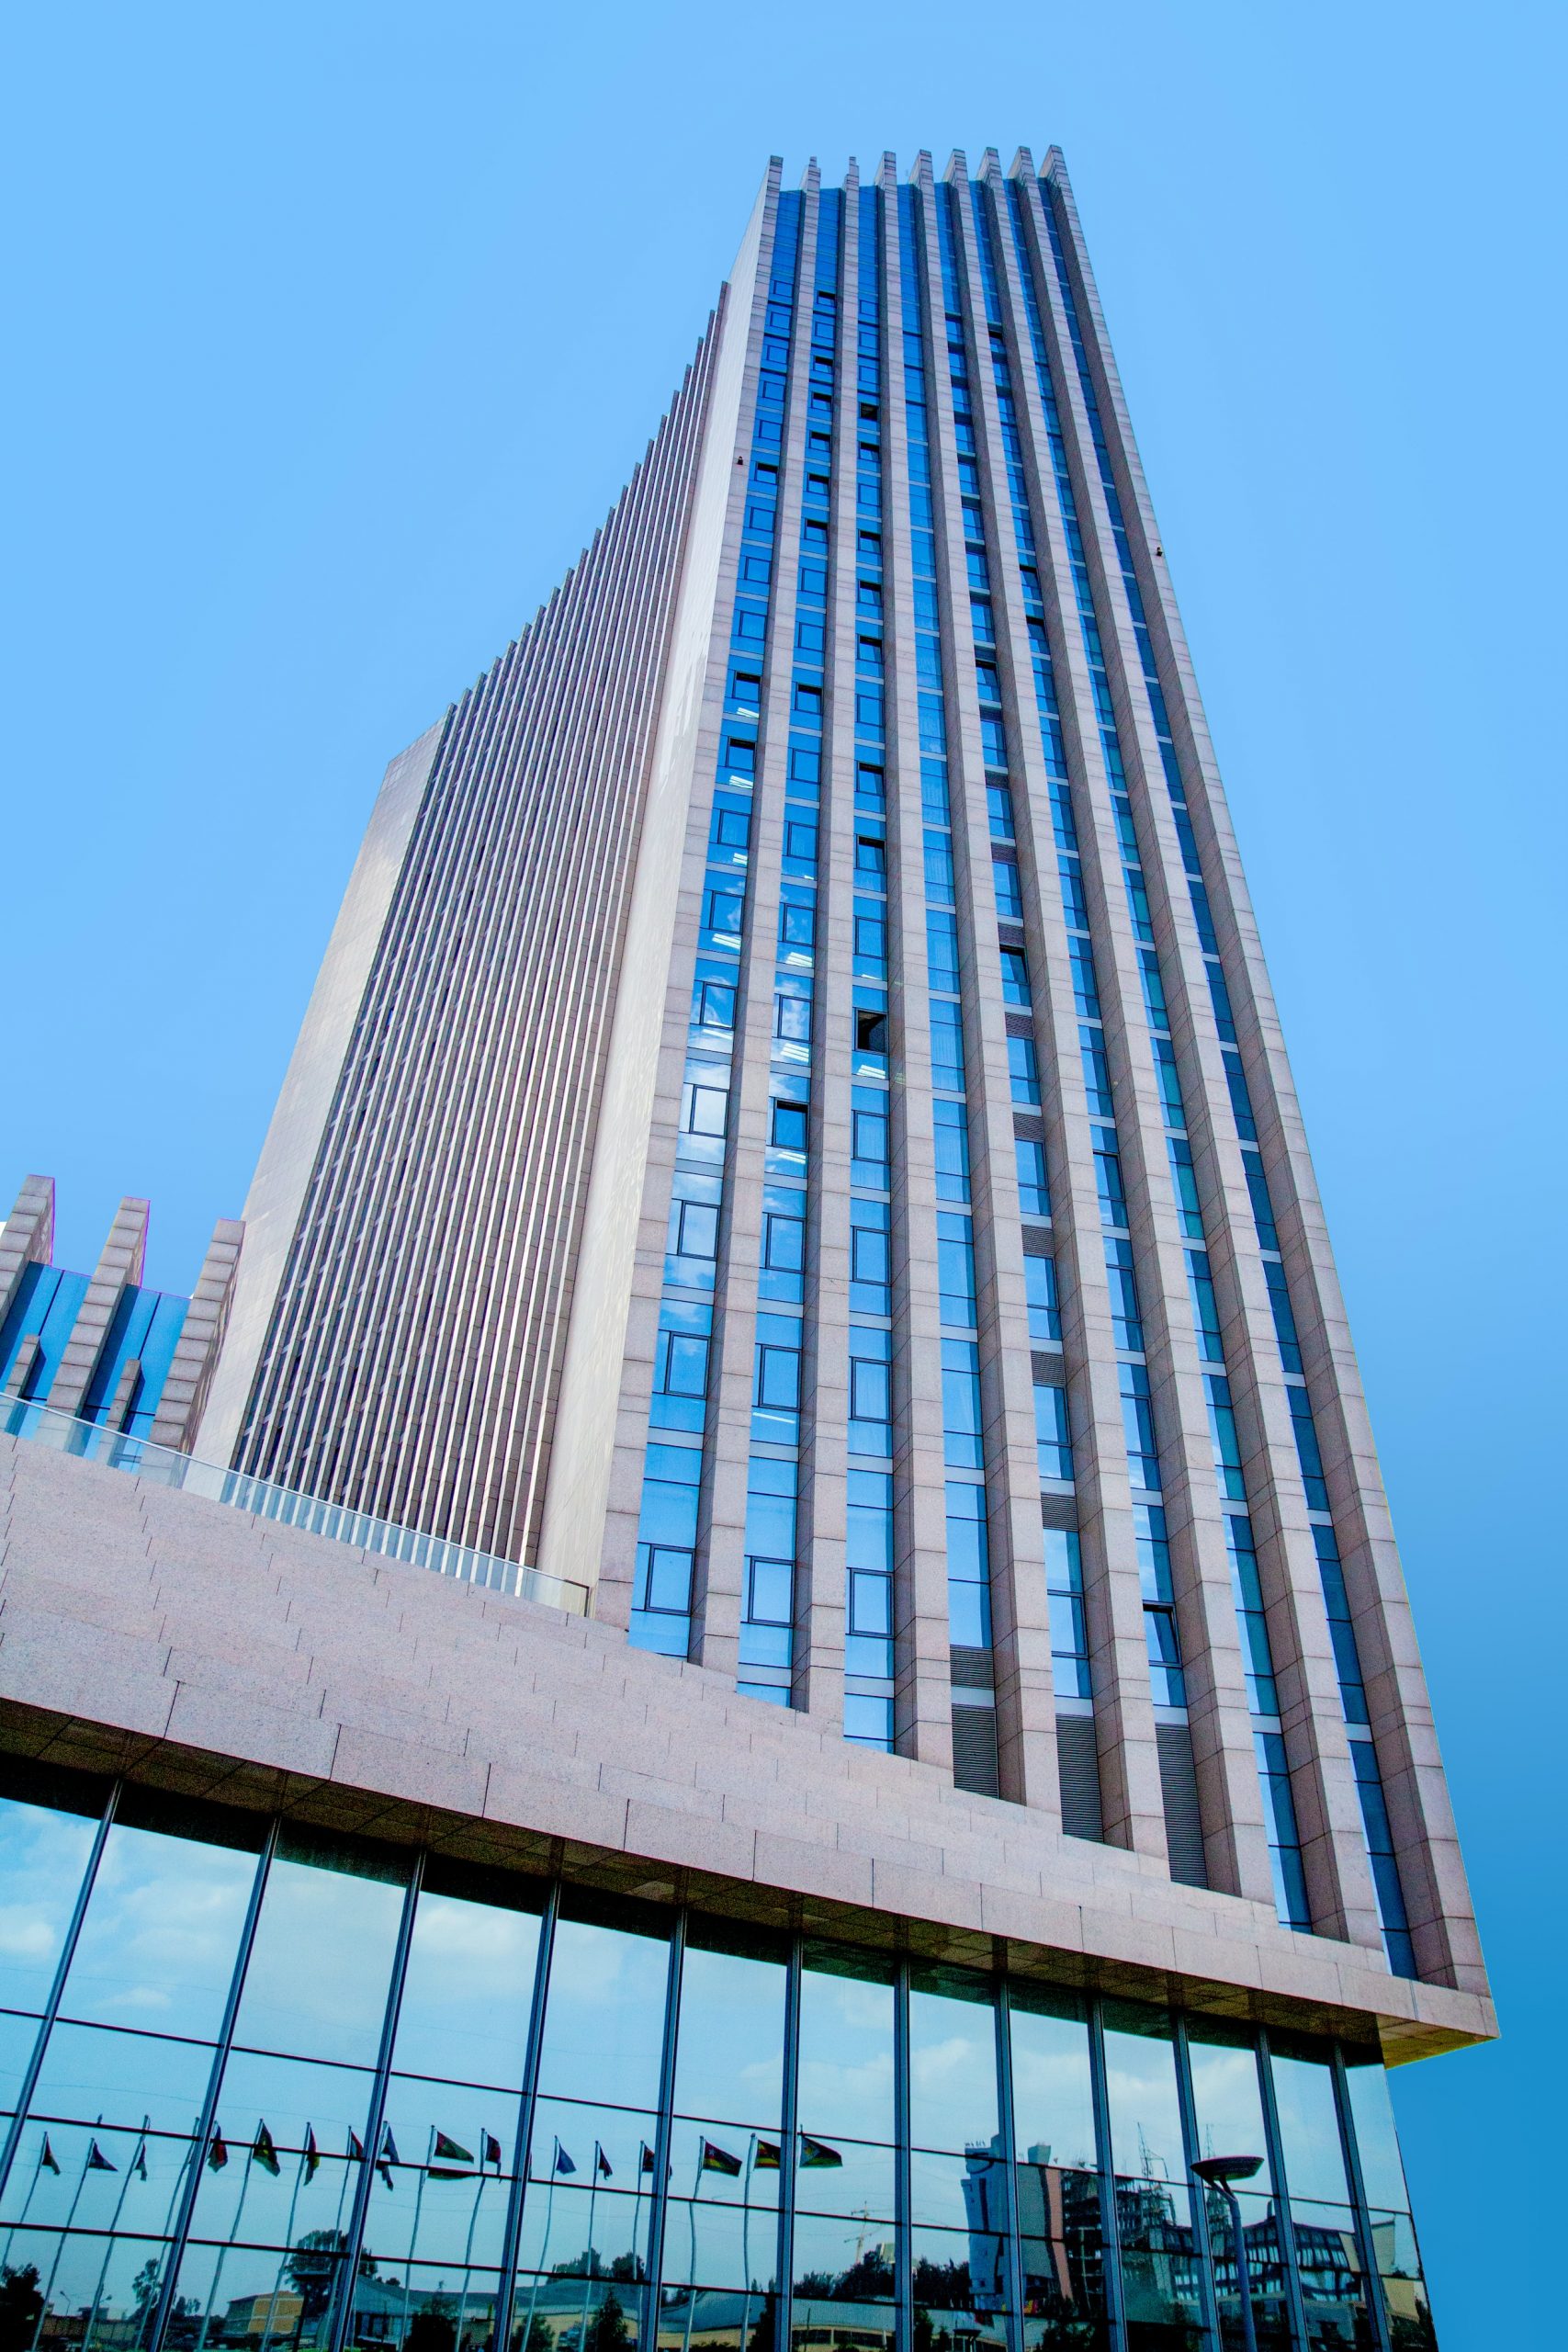 African Union headquarters in Ethiopia